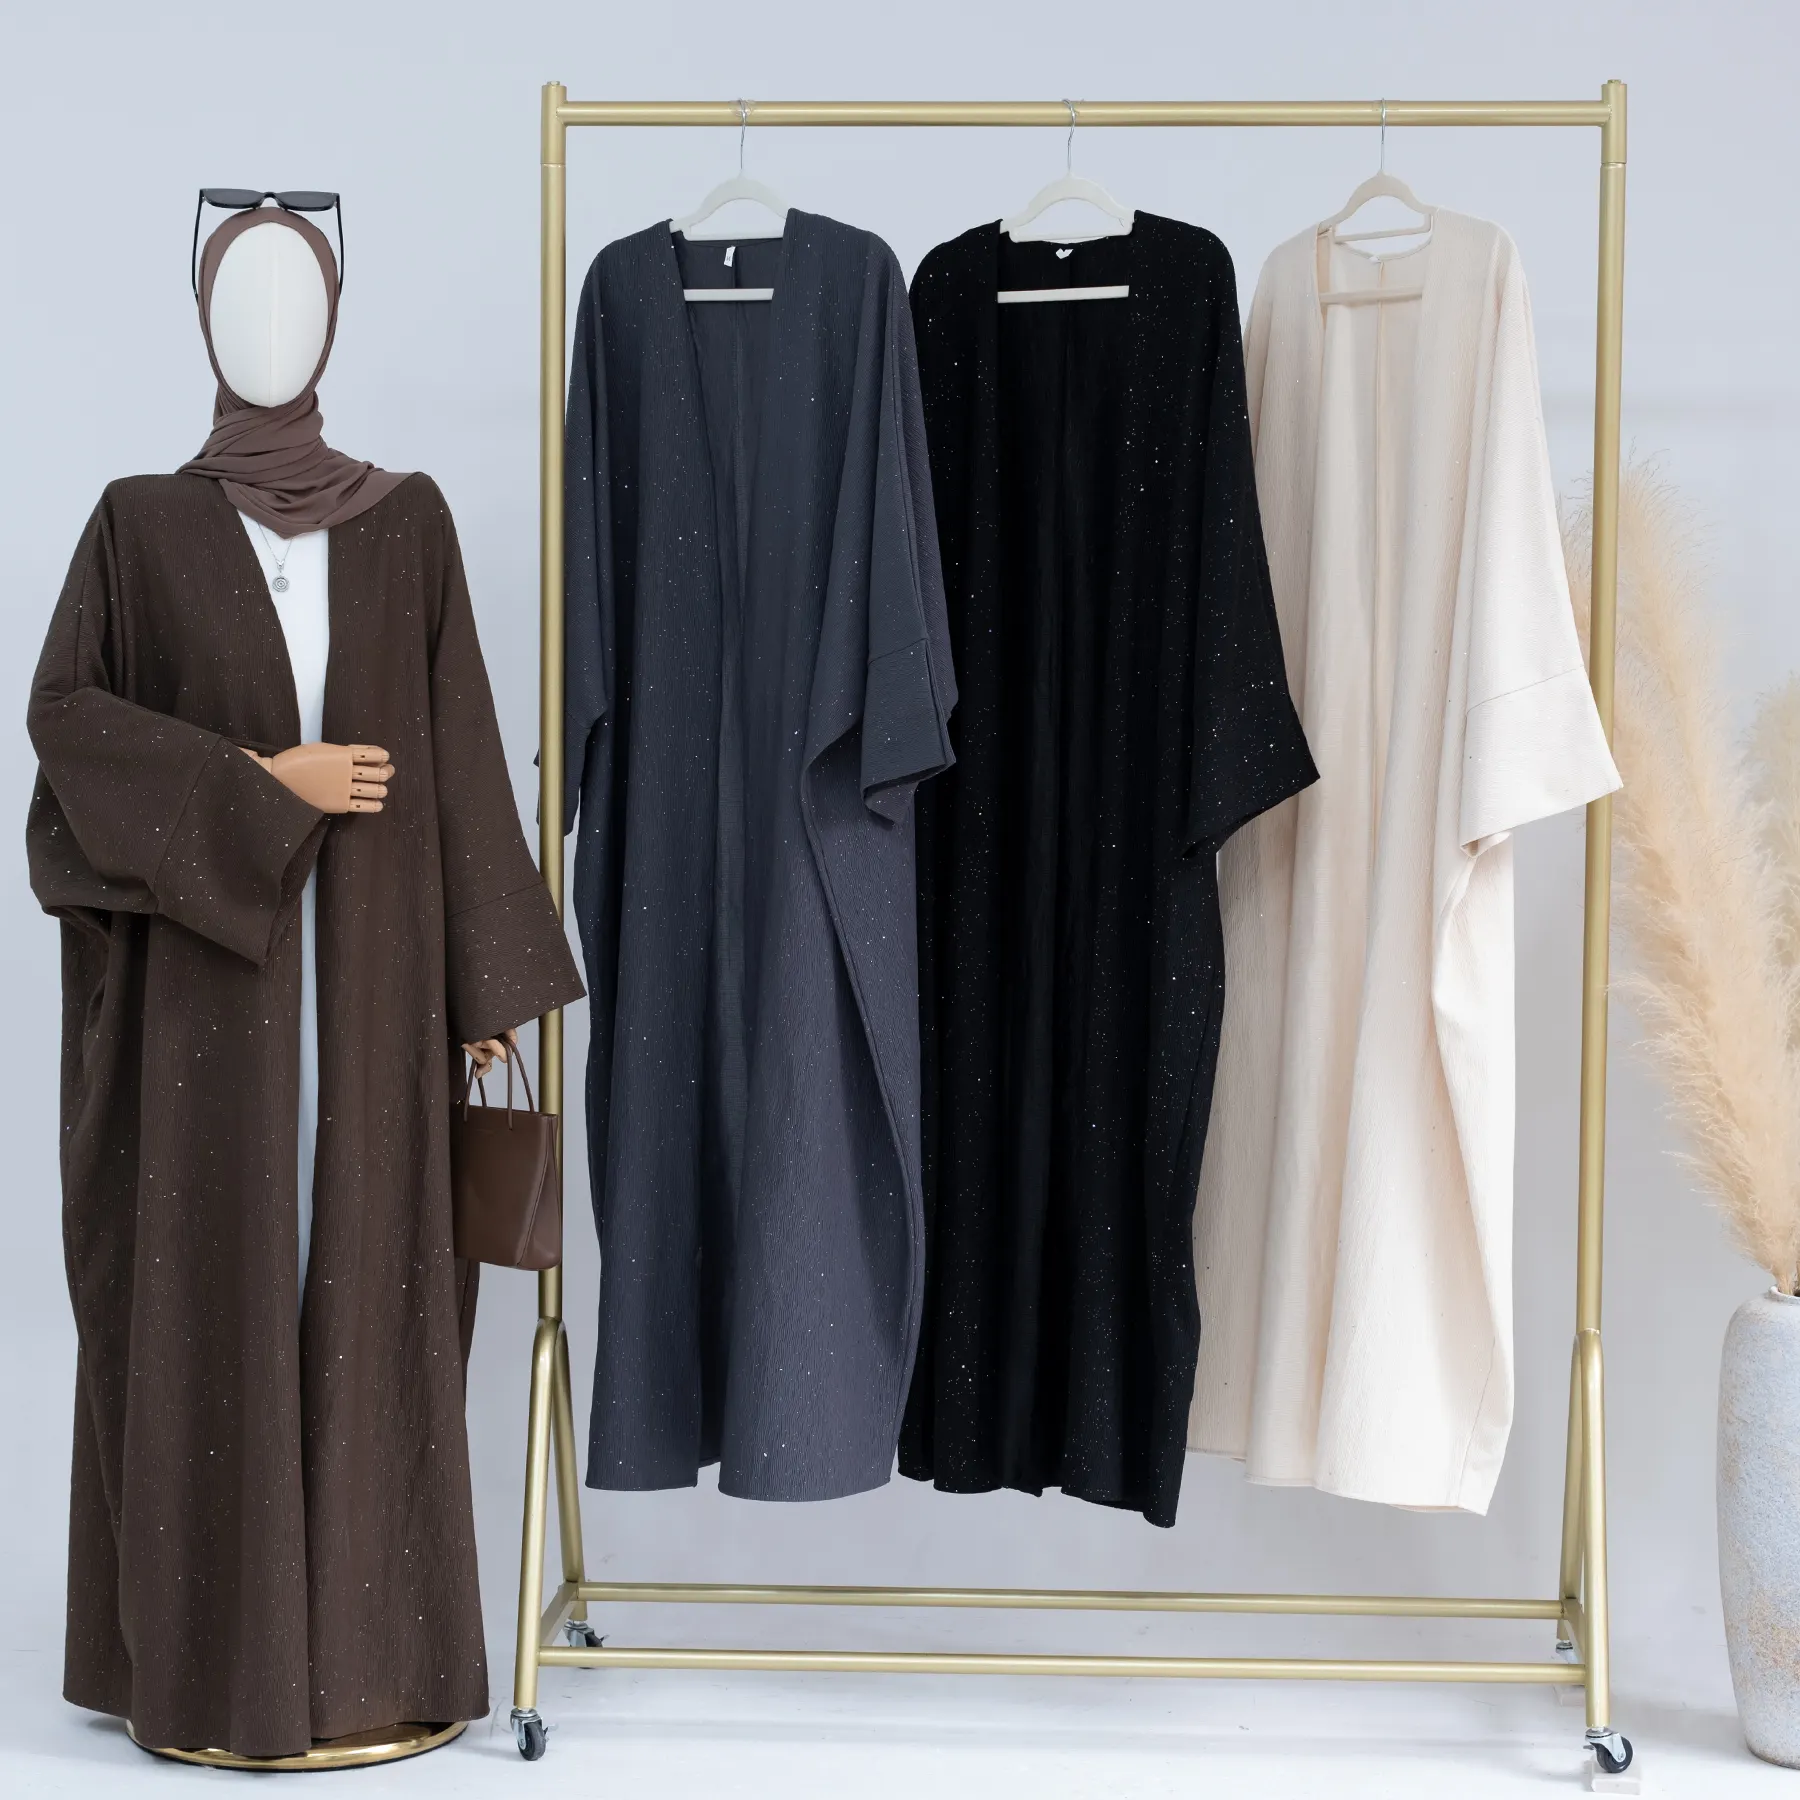 2023 Loriya Novo Outono Inverno Dubai Abaya Designs Roupas Islâmicas Mulheres Muçulmanas Abaya Grosso Poliéster Cardigan Abayas